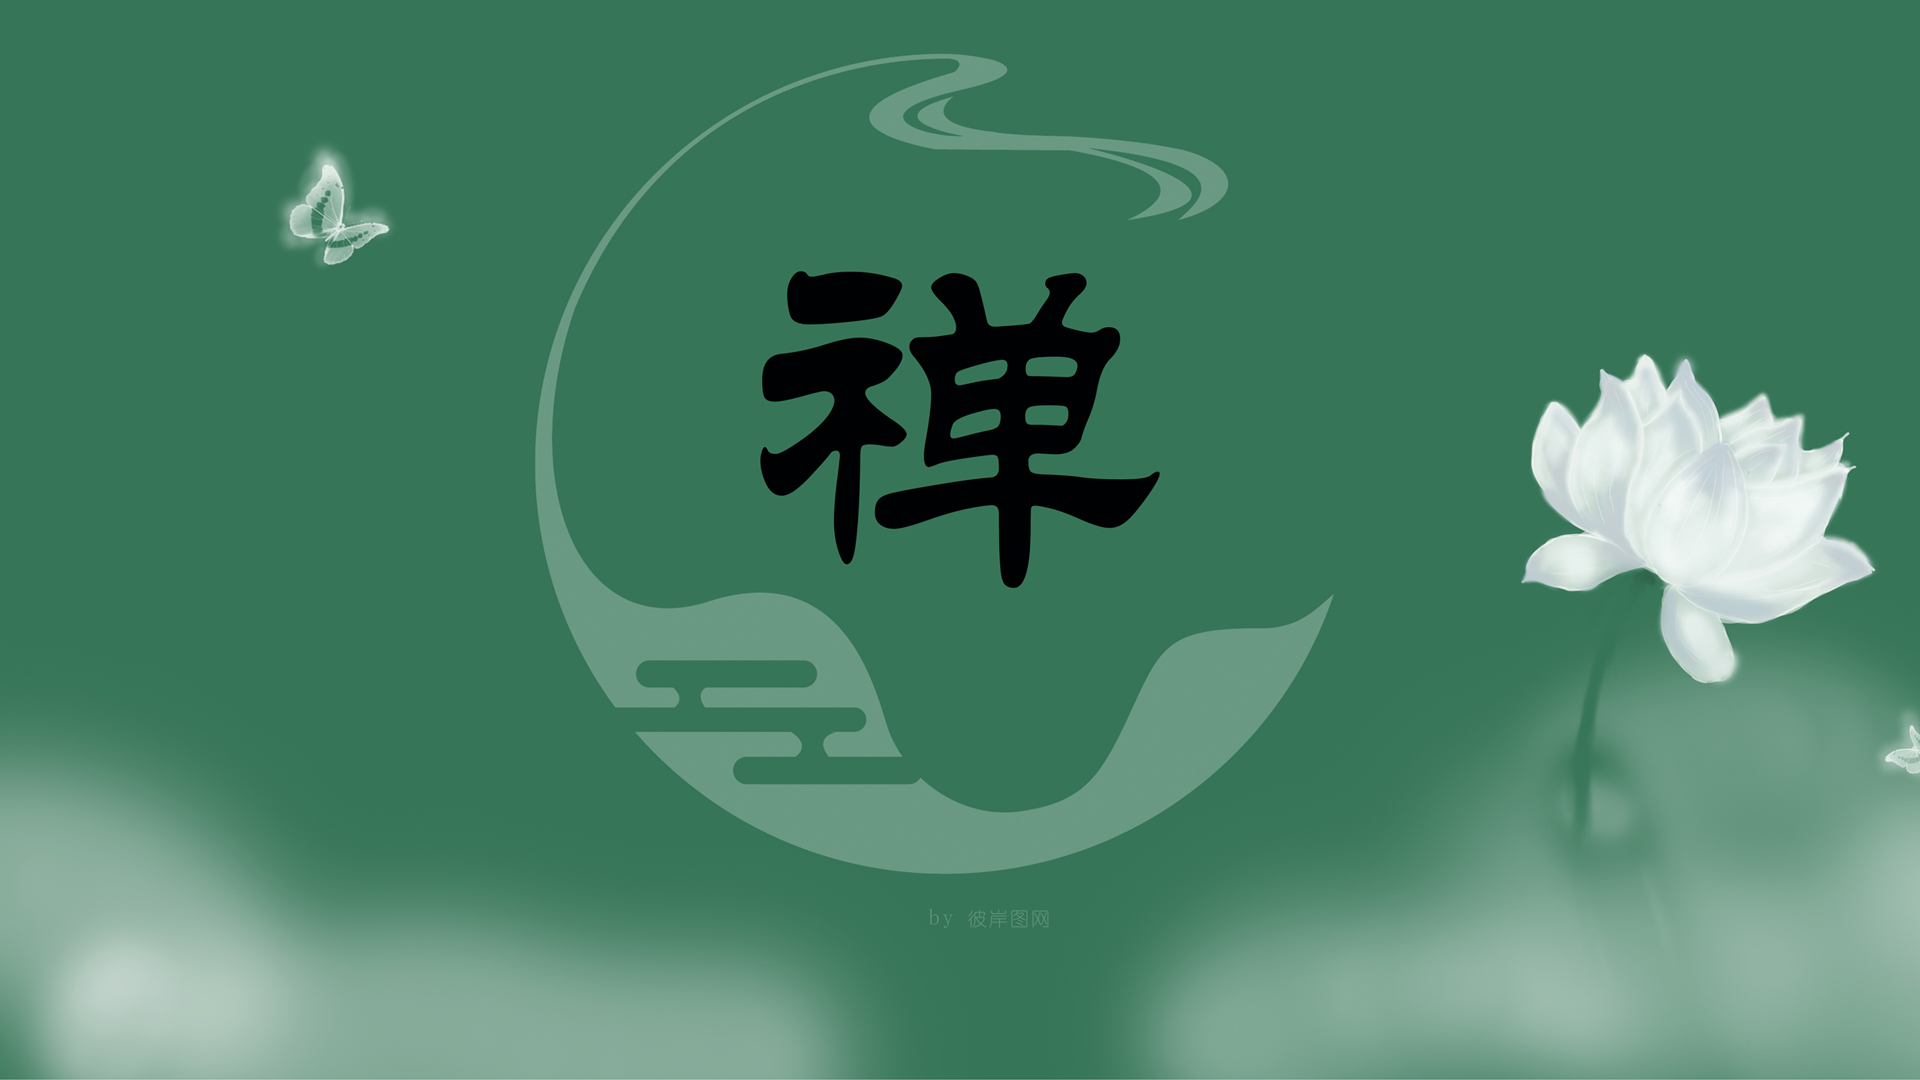 原创 禅 中国风 简约 唯美设计文字禅高清壁纸